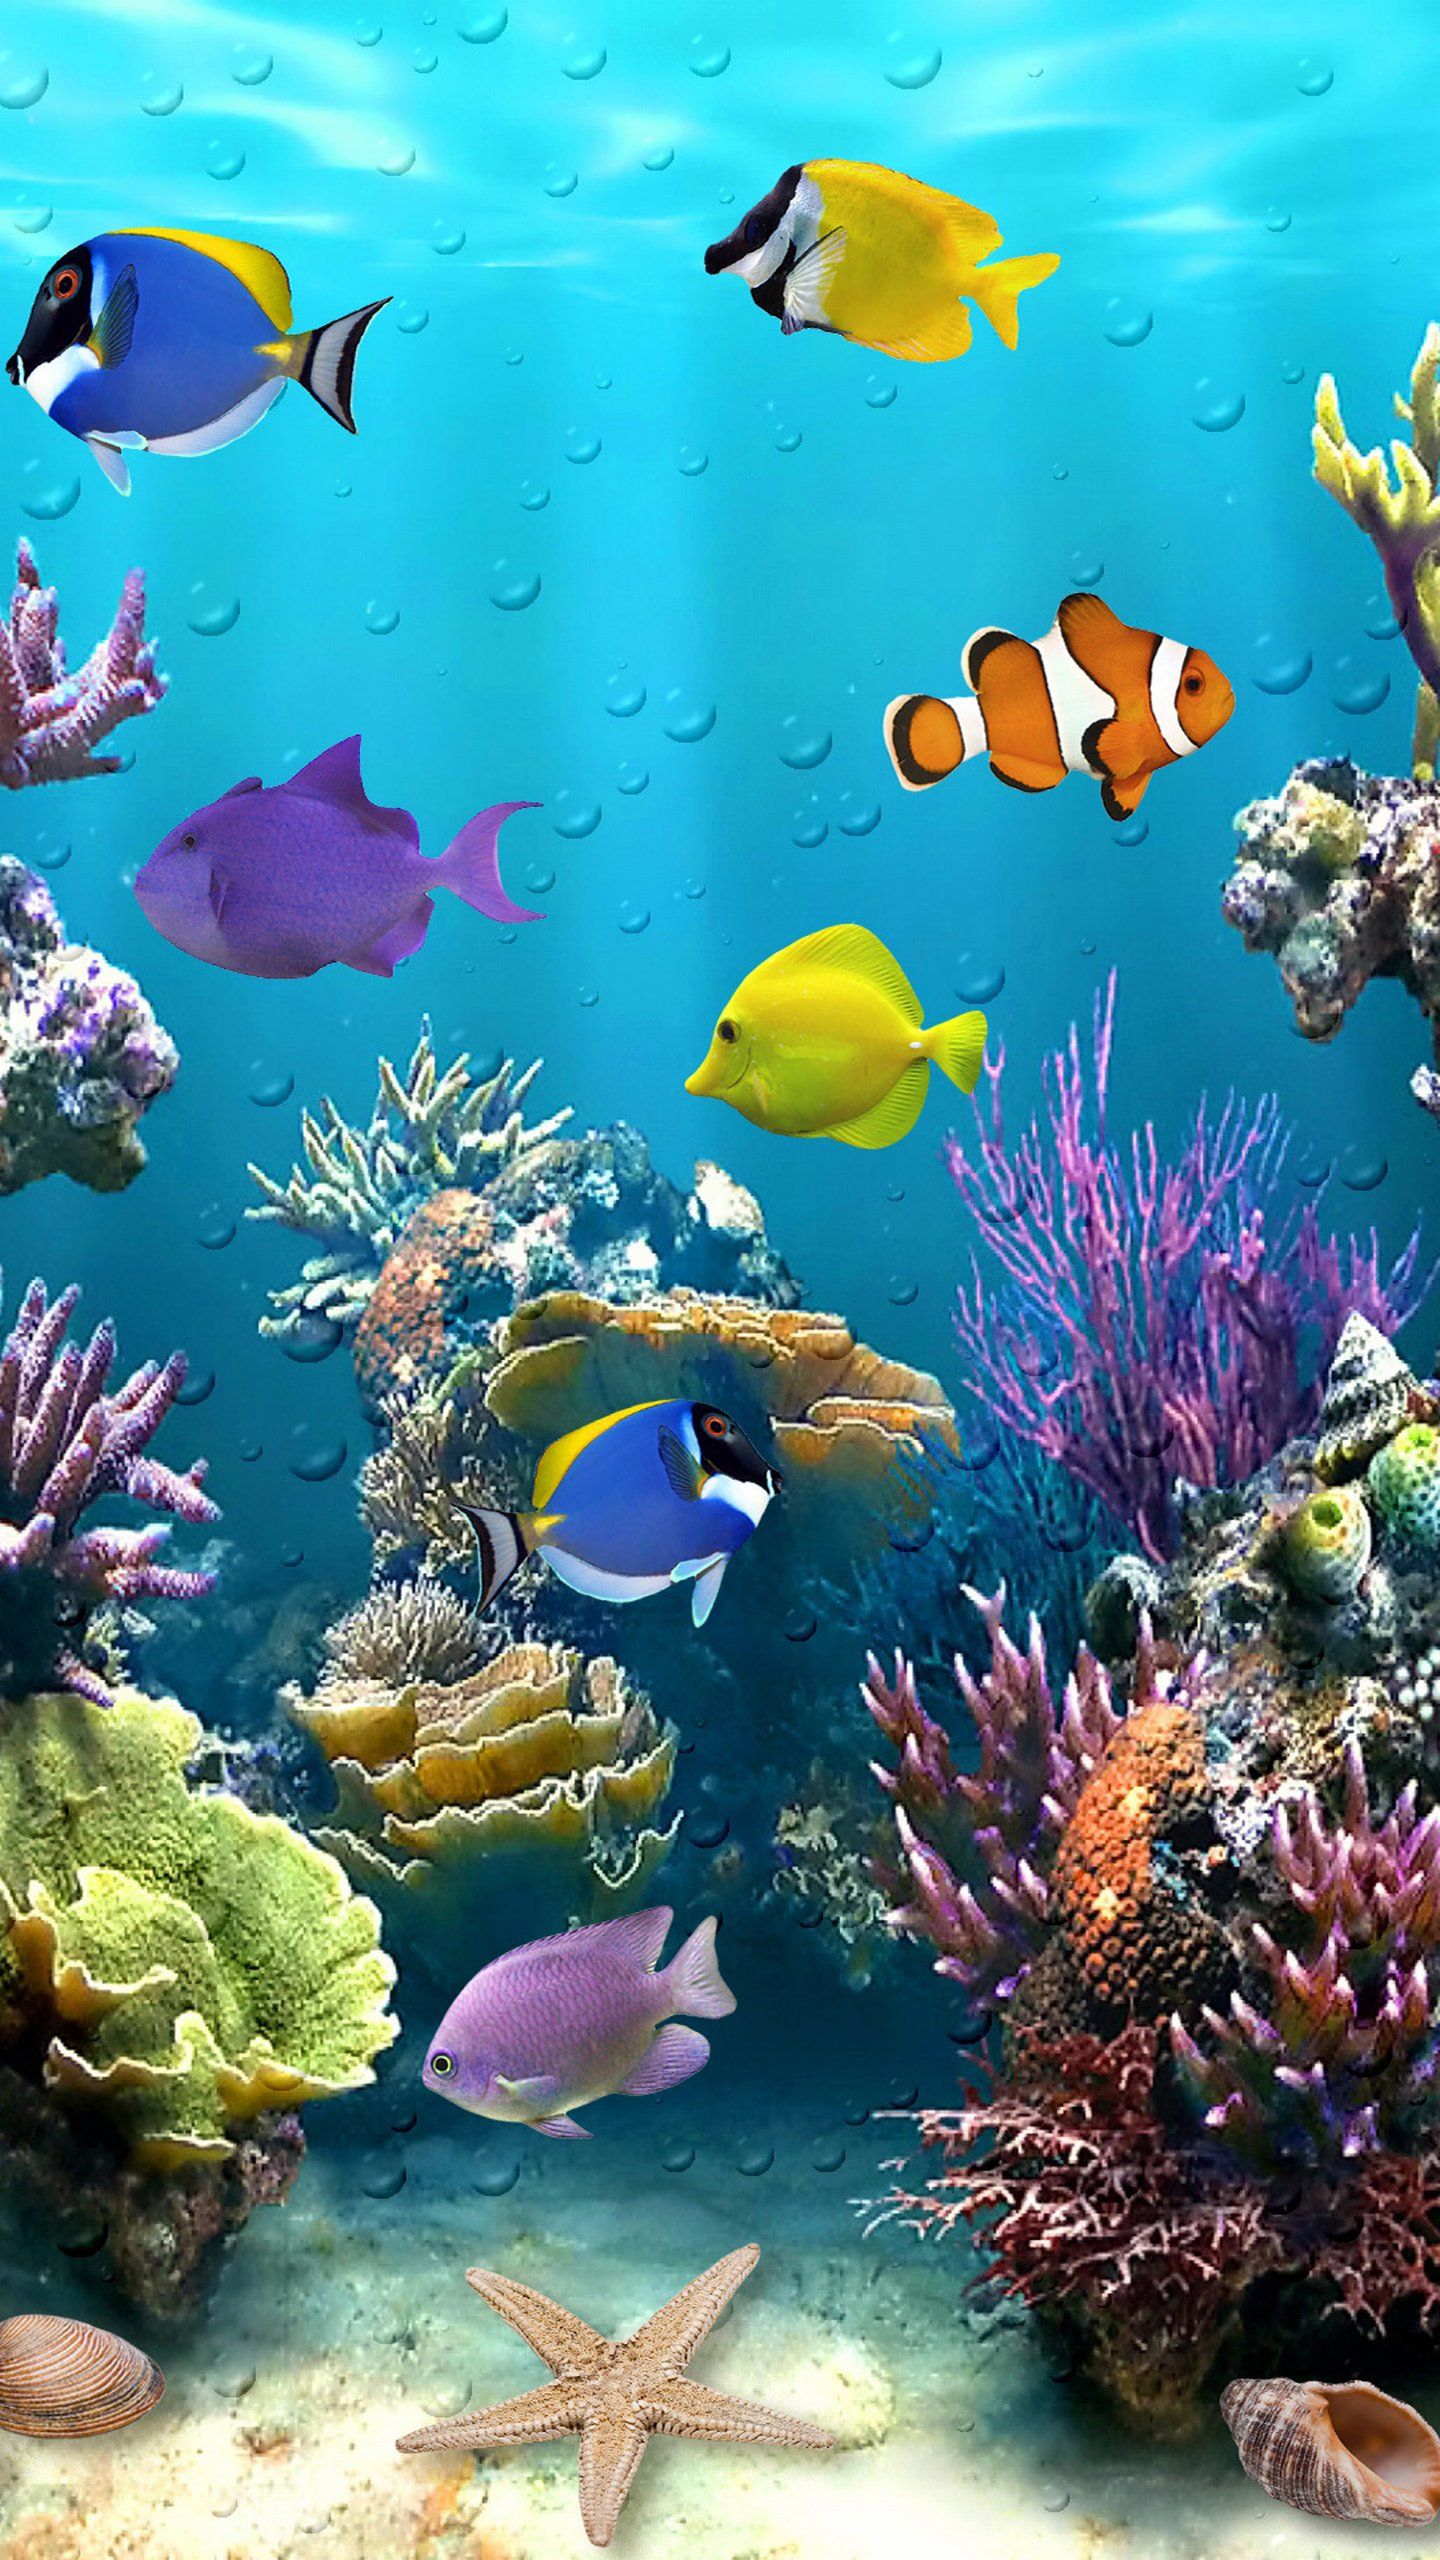 Underwater Live Wallpapers